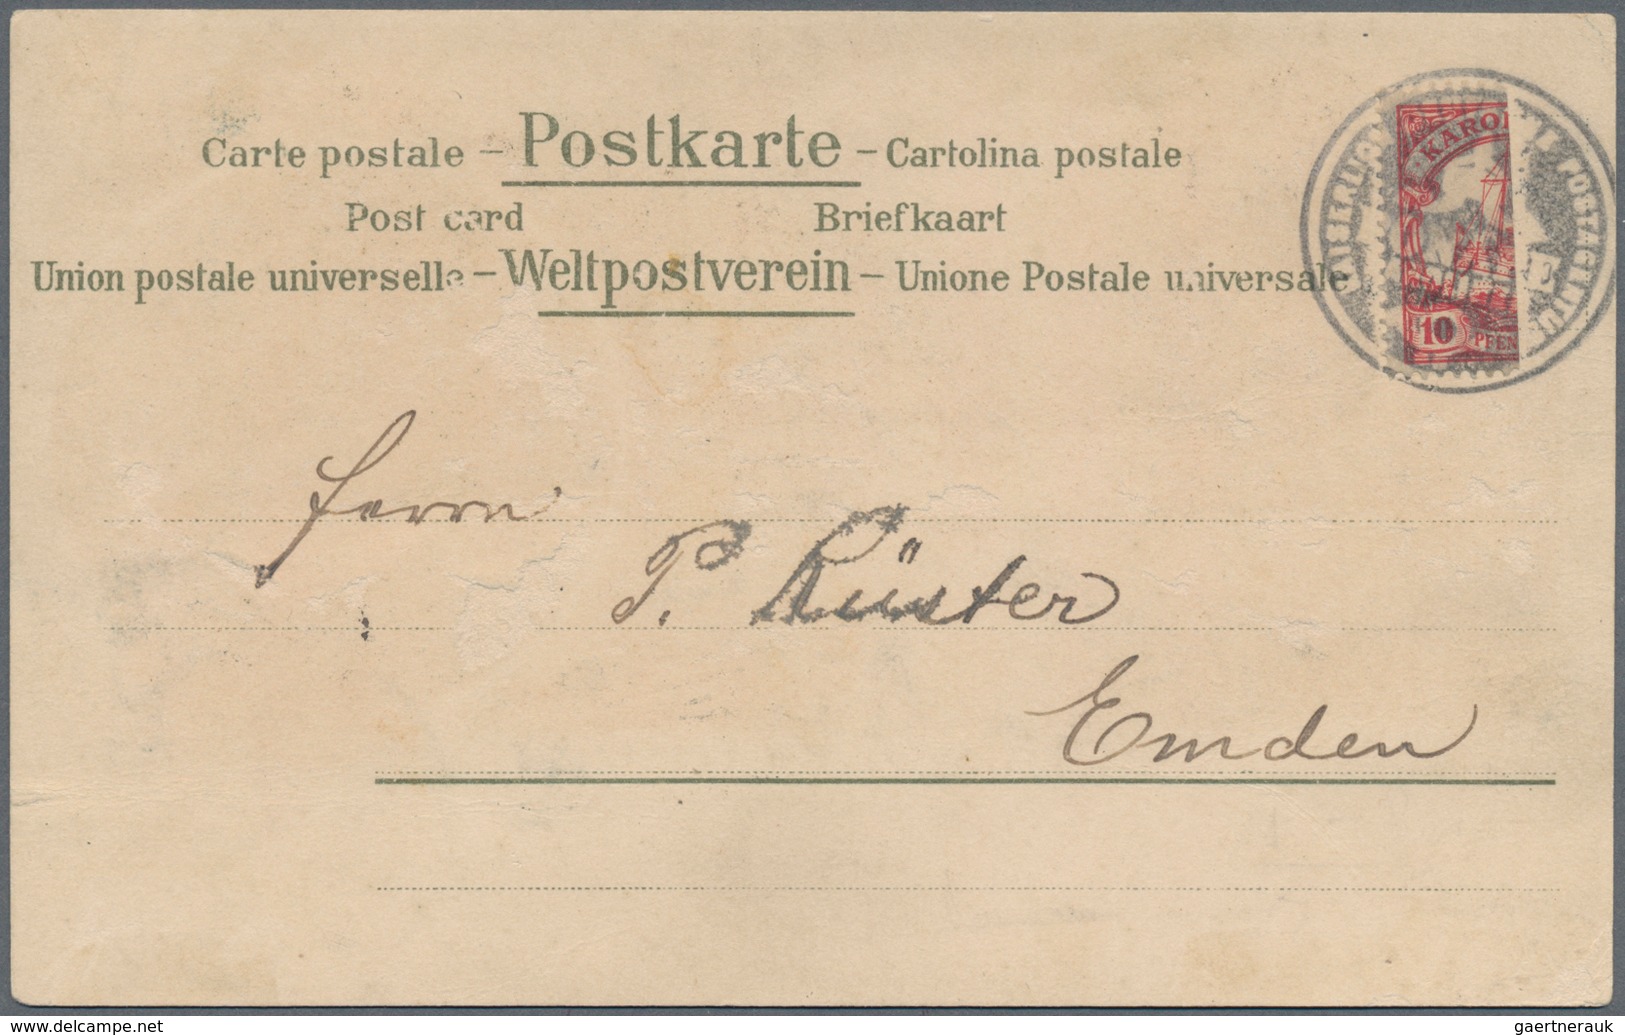 Deutsche Schiffspost - Marine: 1900/01, MSP No. 4 (Irene) auf jap. UPU Karte n. Winzig, MSP No. 43 (